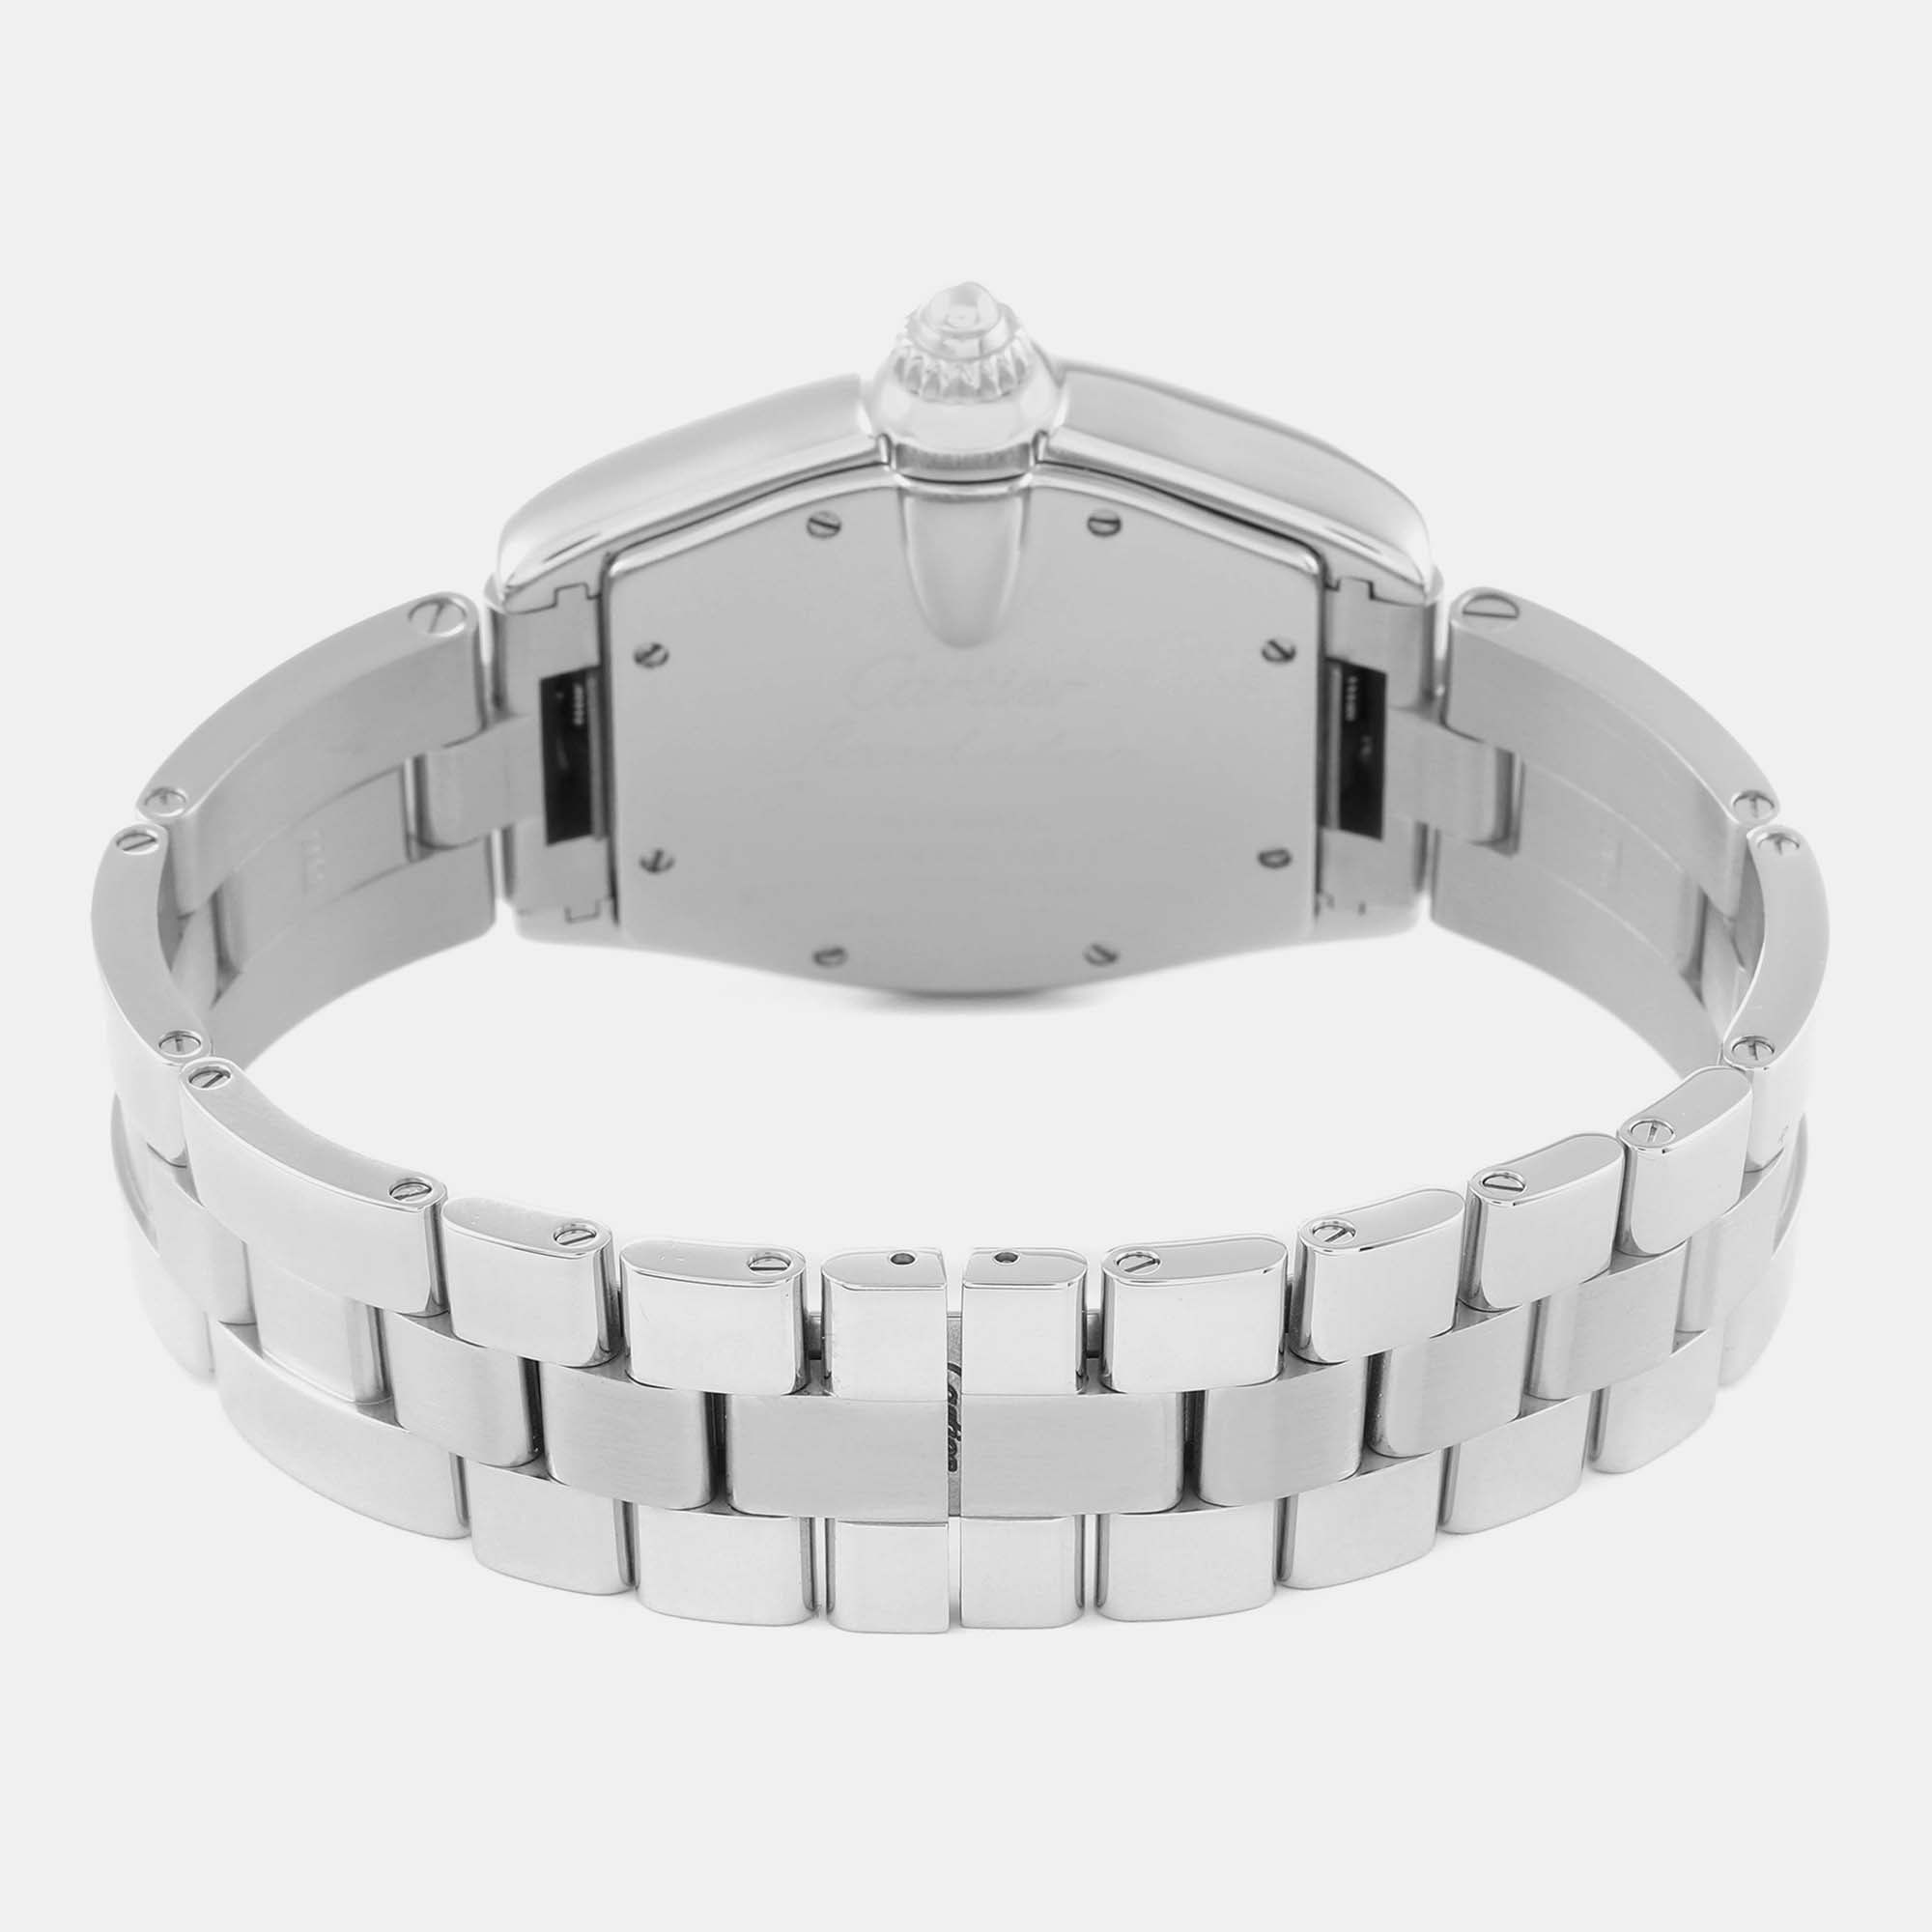 Cartier Roadster Large Silver Dial Steel Men's Watch W62025V3 38 X 43 Mm